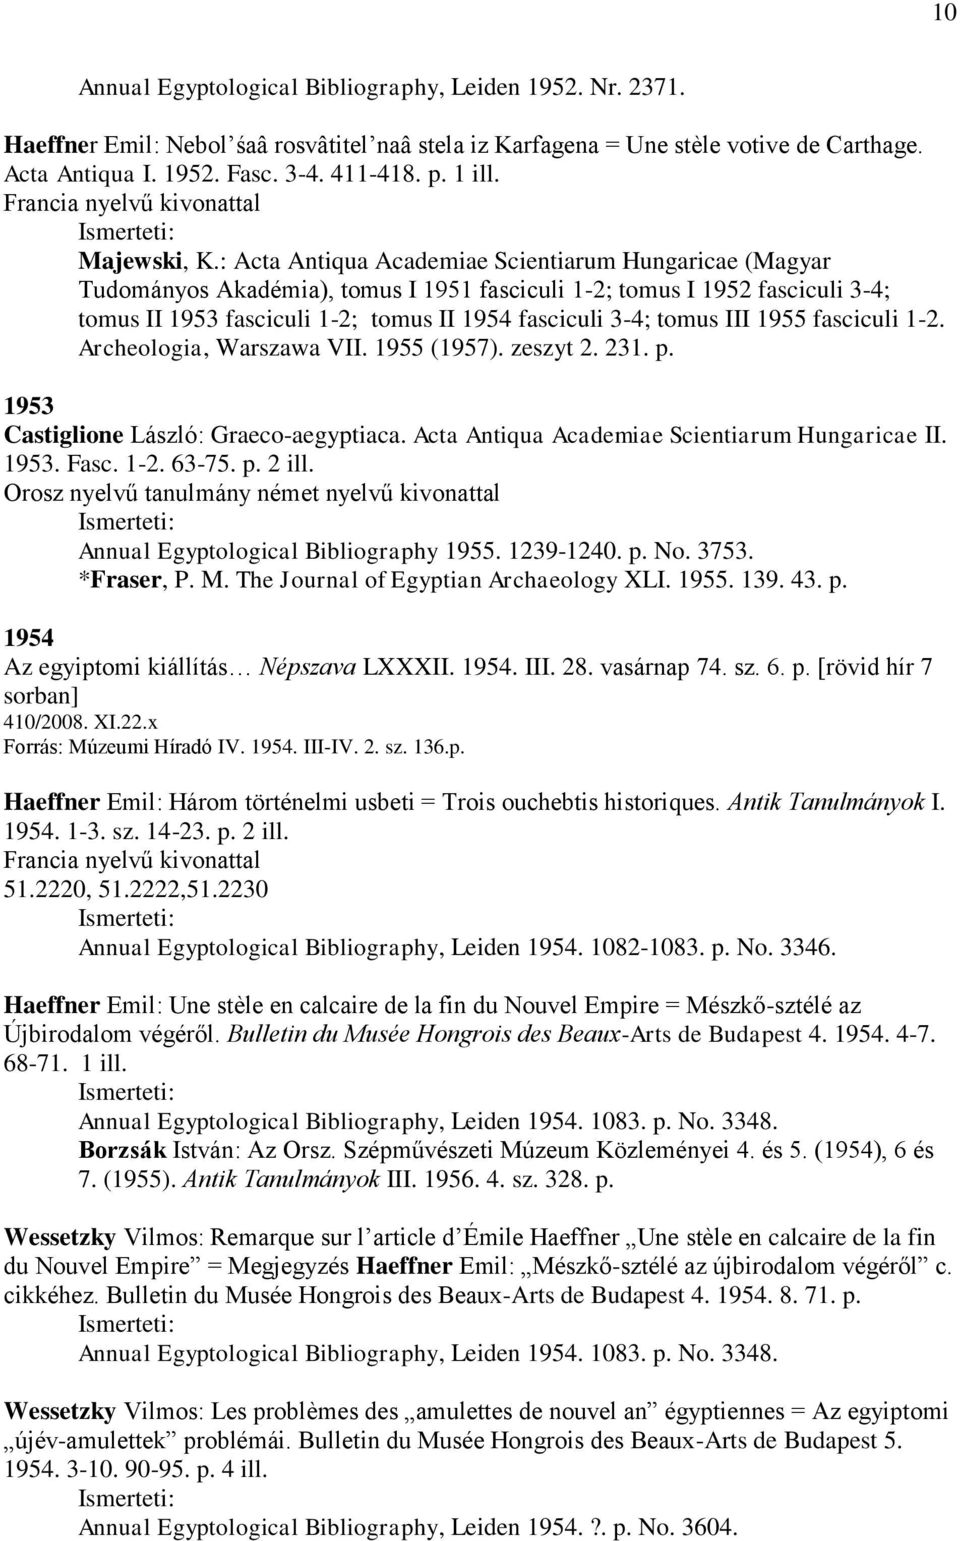 : Acta Antiqua Academiae Scientiarum Hungaricae (Magyar Tudományos Akadémia), tomus I 1951 fasciculi 1-2; tomus I 1952 fasciculi 3-4; tomus II 1953 fasciculi 1-2; tomus II 1954 fasciculi 3-4; tomus